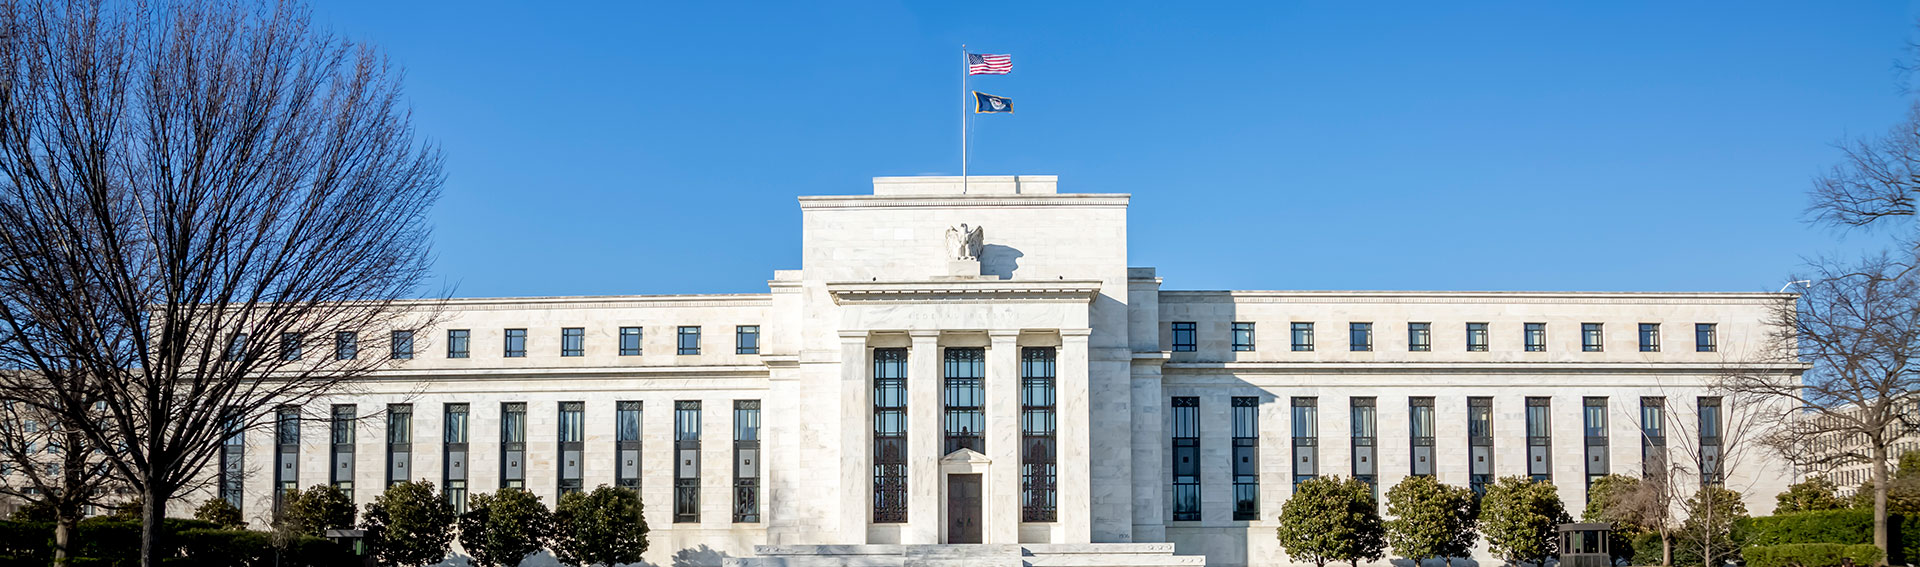 Le cycle de hausse des taux d’intérêt de la Fed touche-t-il à sa fin?